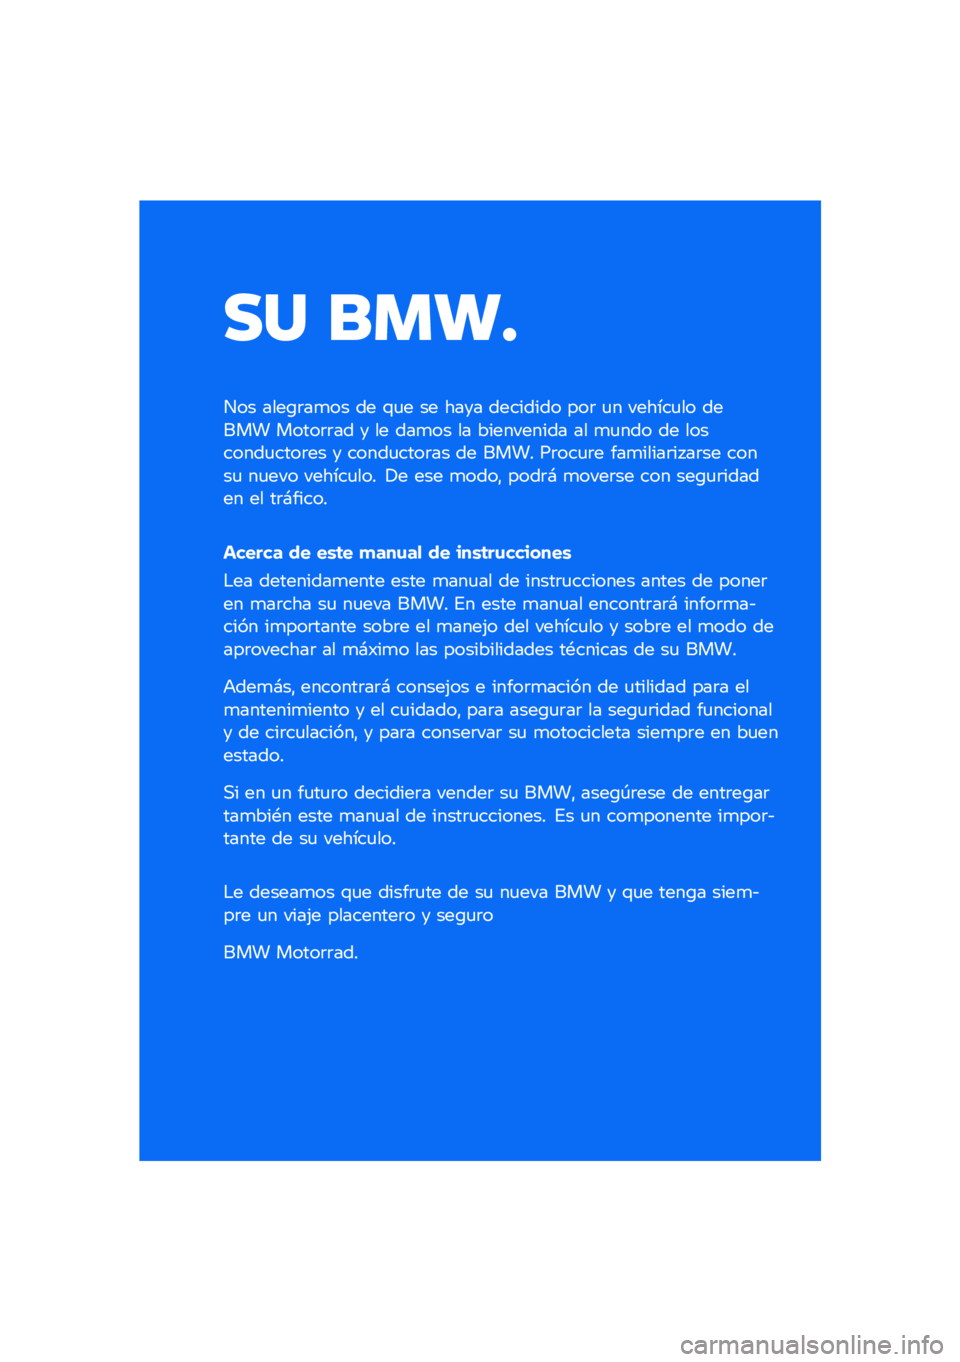 BMW MOTORRAD F 850 GS 2021  Manual de instrucciones (in Spanish) �� ����
��� ����\b�	��
�� �� �\f�
� �� ���� �������� ���	 �
� ������
�� ����� �����	�	�� � �� ���
�� �� ���������� �� �
�
��